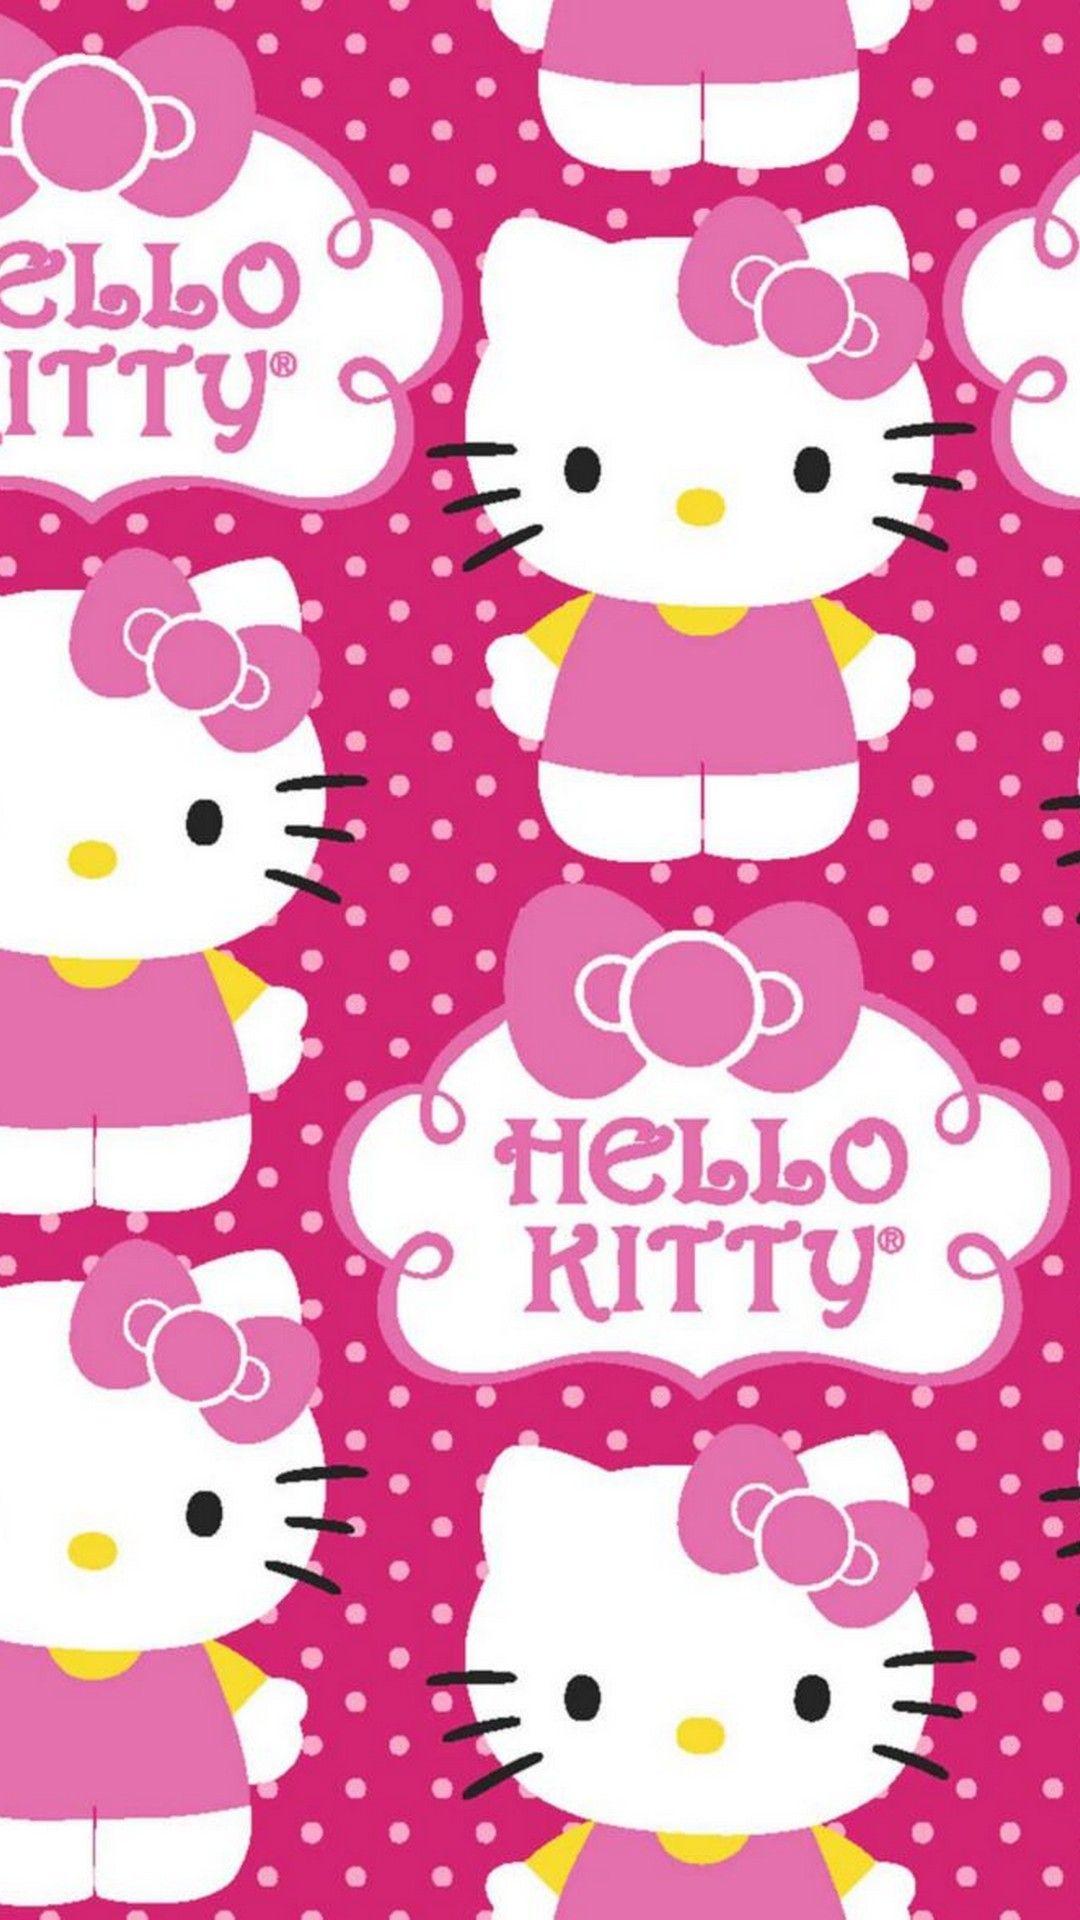 Hãy xem những hình nền Hello Kitty đáng yêu, kết hợp với những màu pastel và đính kèm với những chi tiết hình mèo đến từ những bộ phim anime và truyện tranh nổi tiếng. Hình ảnh này sẽ thỏa mãn trái tim của bất kỳ cô gái nào yêu thích sự đáng yêu và nữ tính.